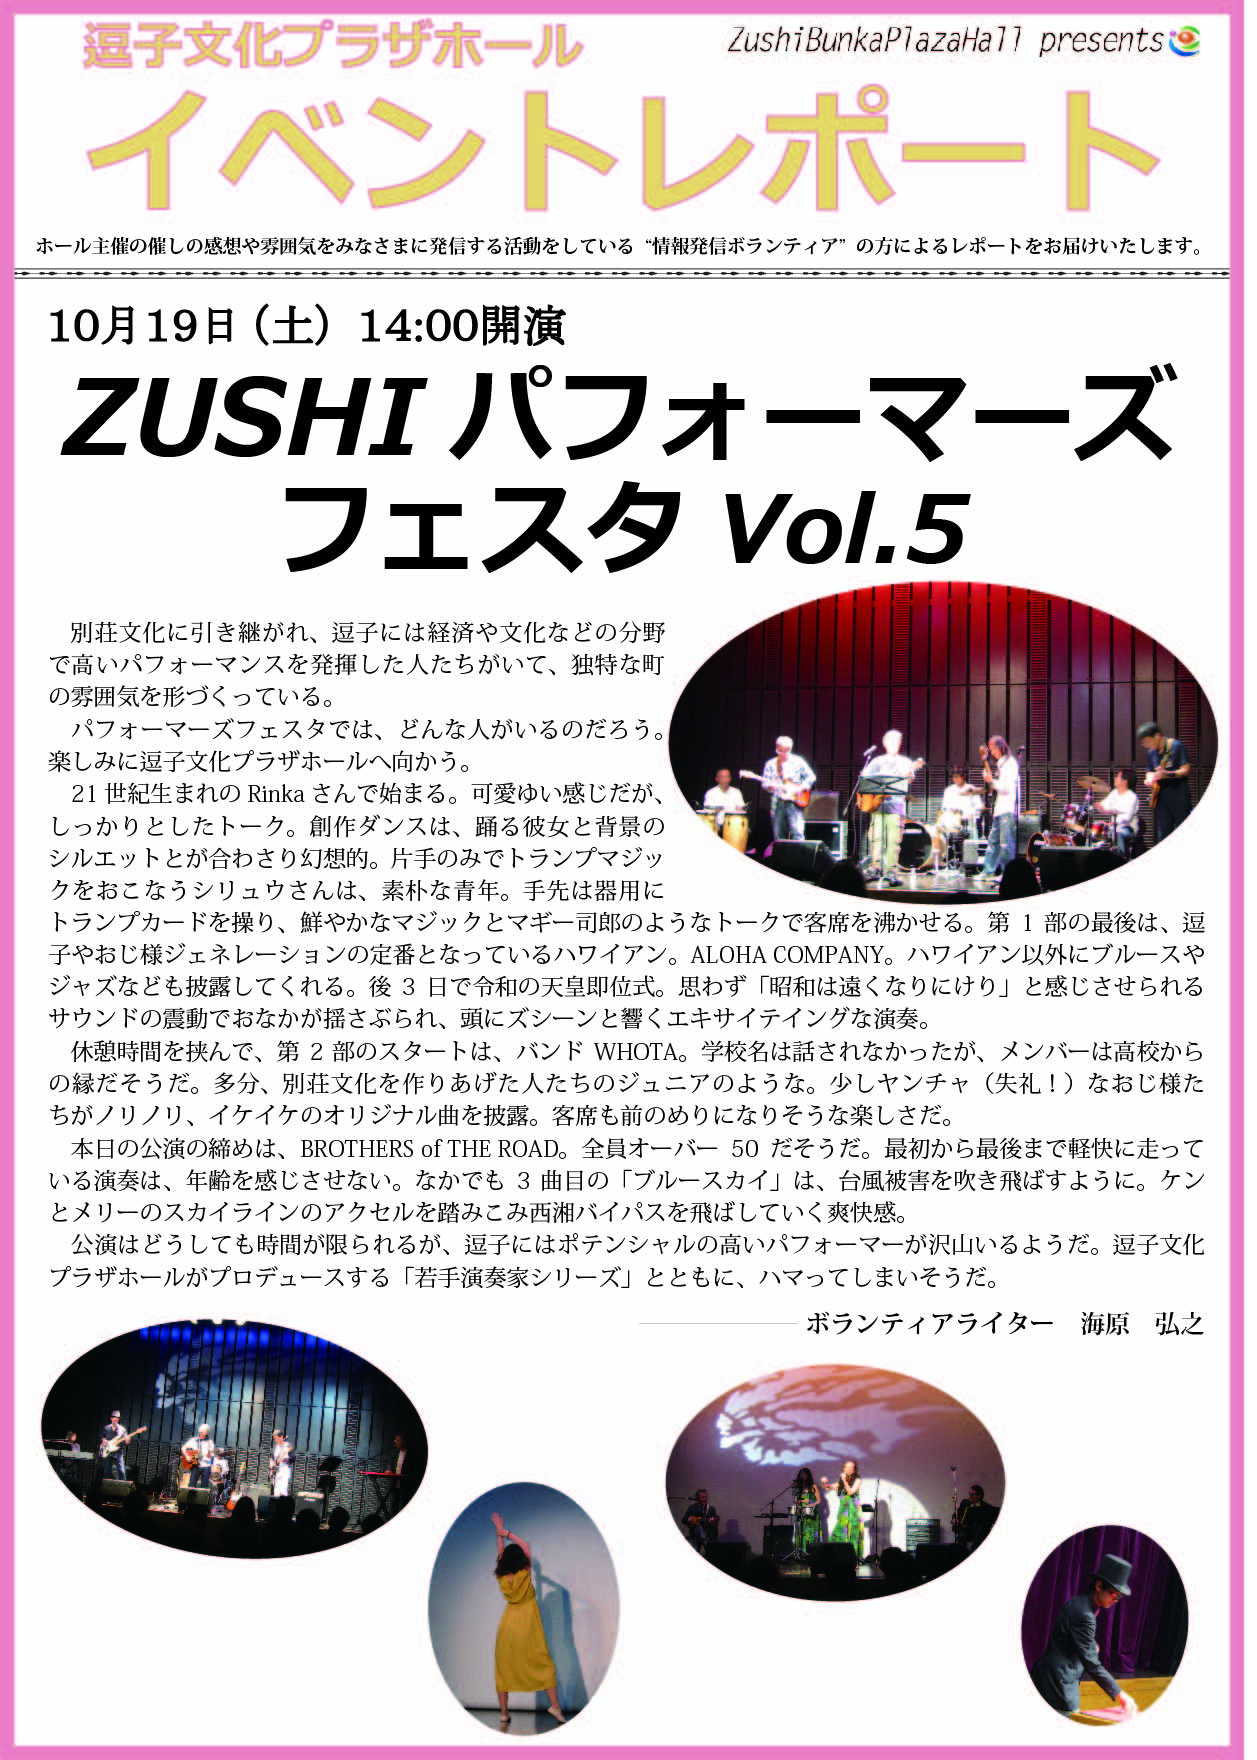 ★イベントレポート「ZUSHI パフォーマーズフェスタVol.5」2019年10月19日（土）開催